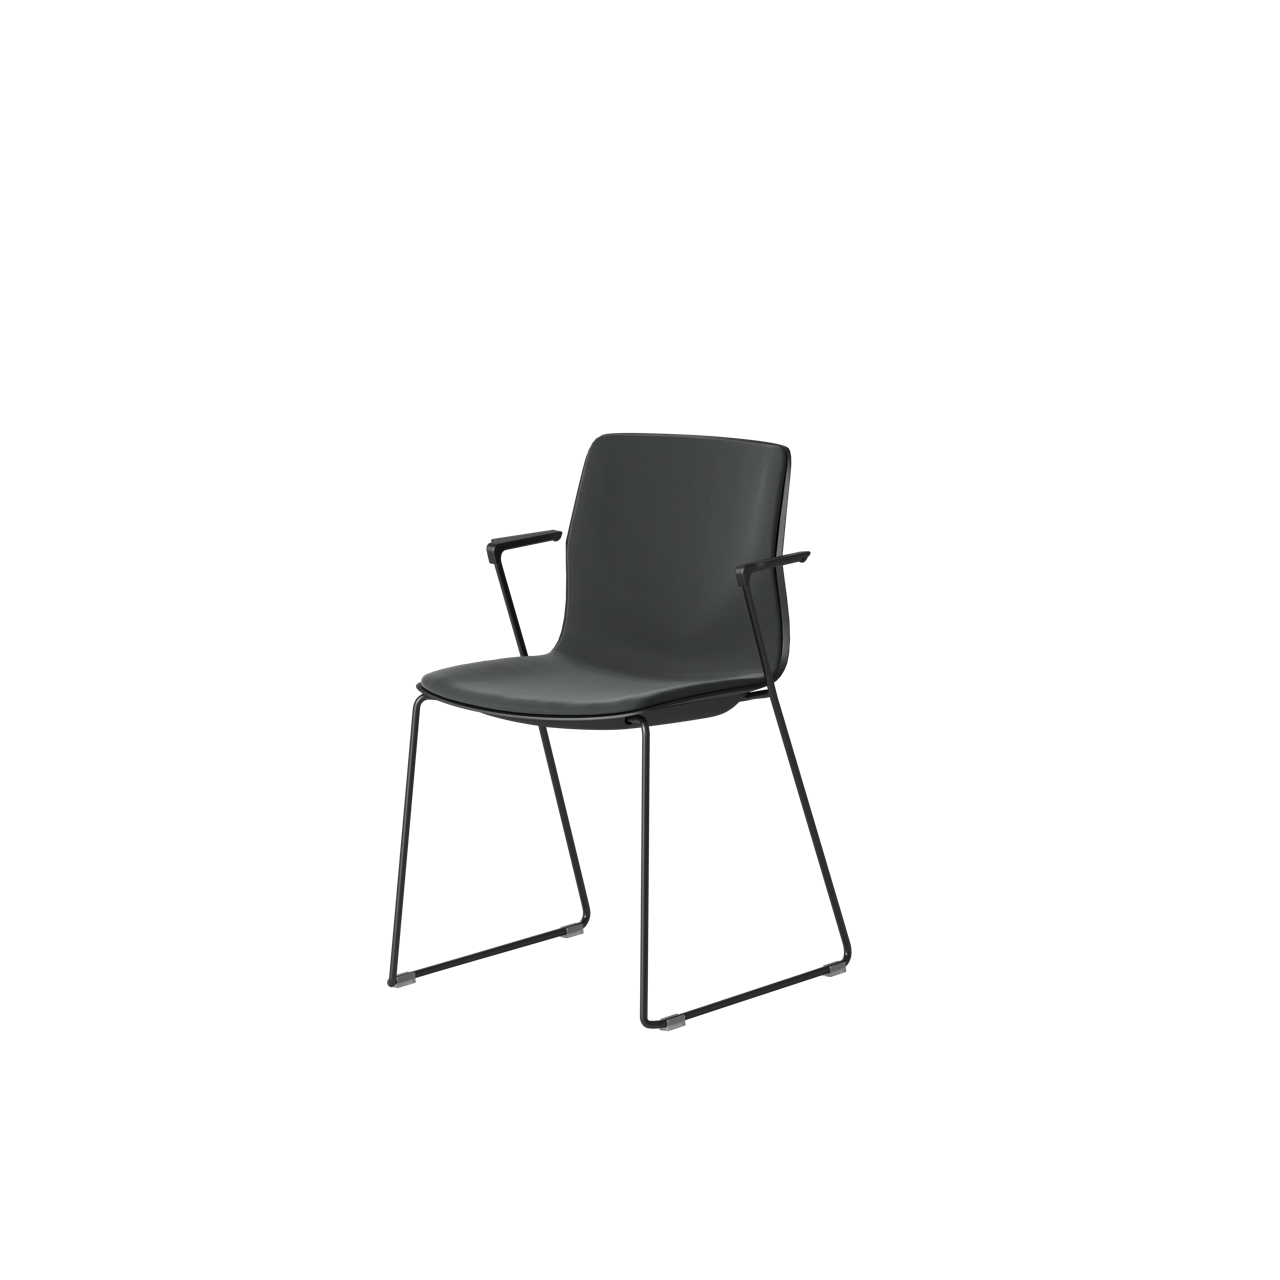 OCEE&FOUR – Chairs – FourSure 88 – Plastic shell - Inner Upholstery - Armrest - Skid frame - Packshot Image 1 Large